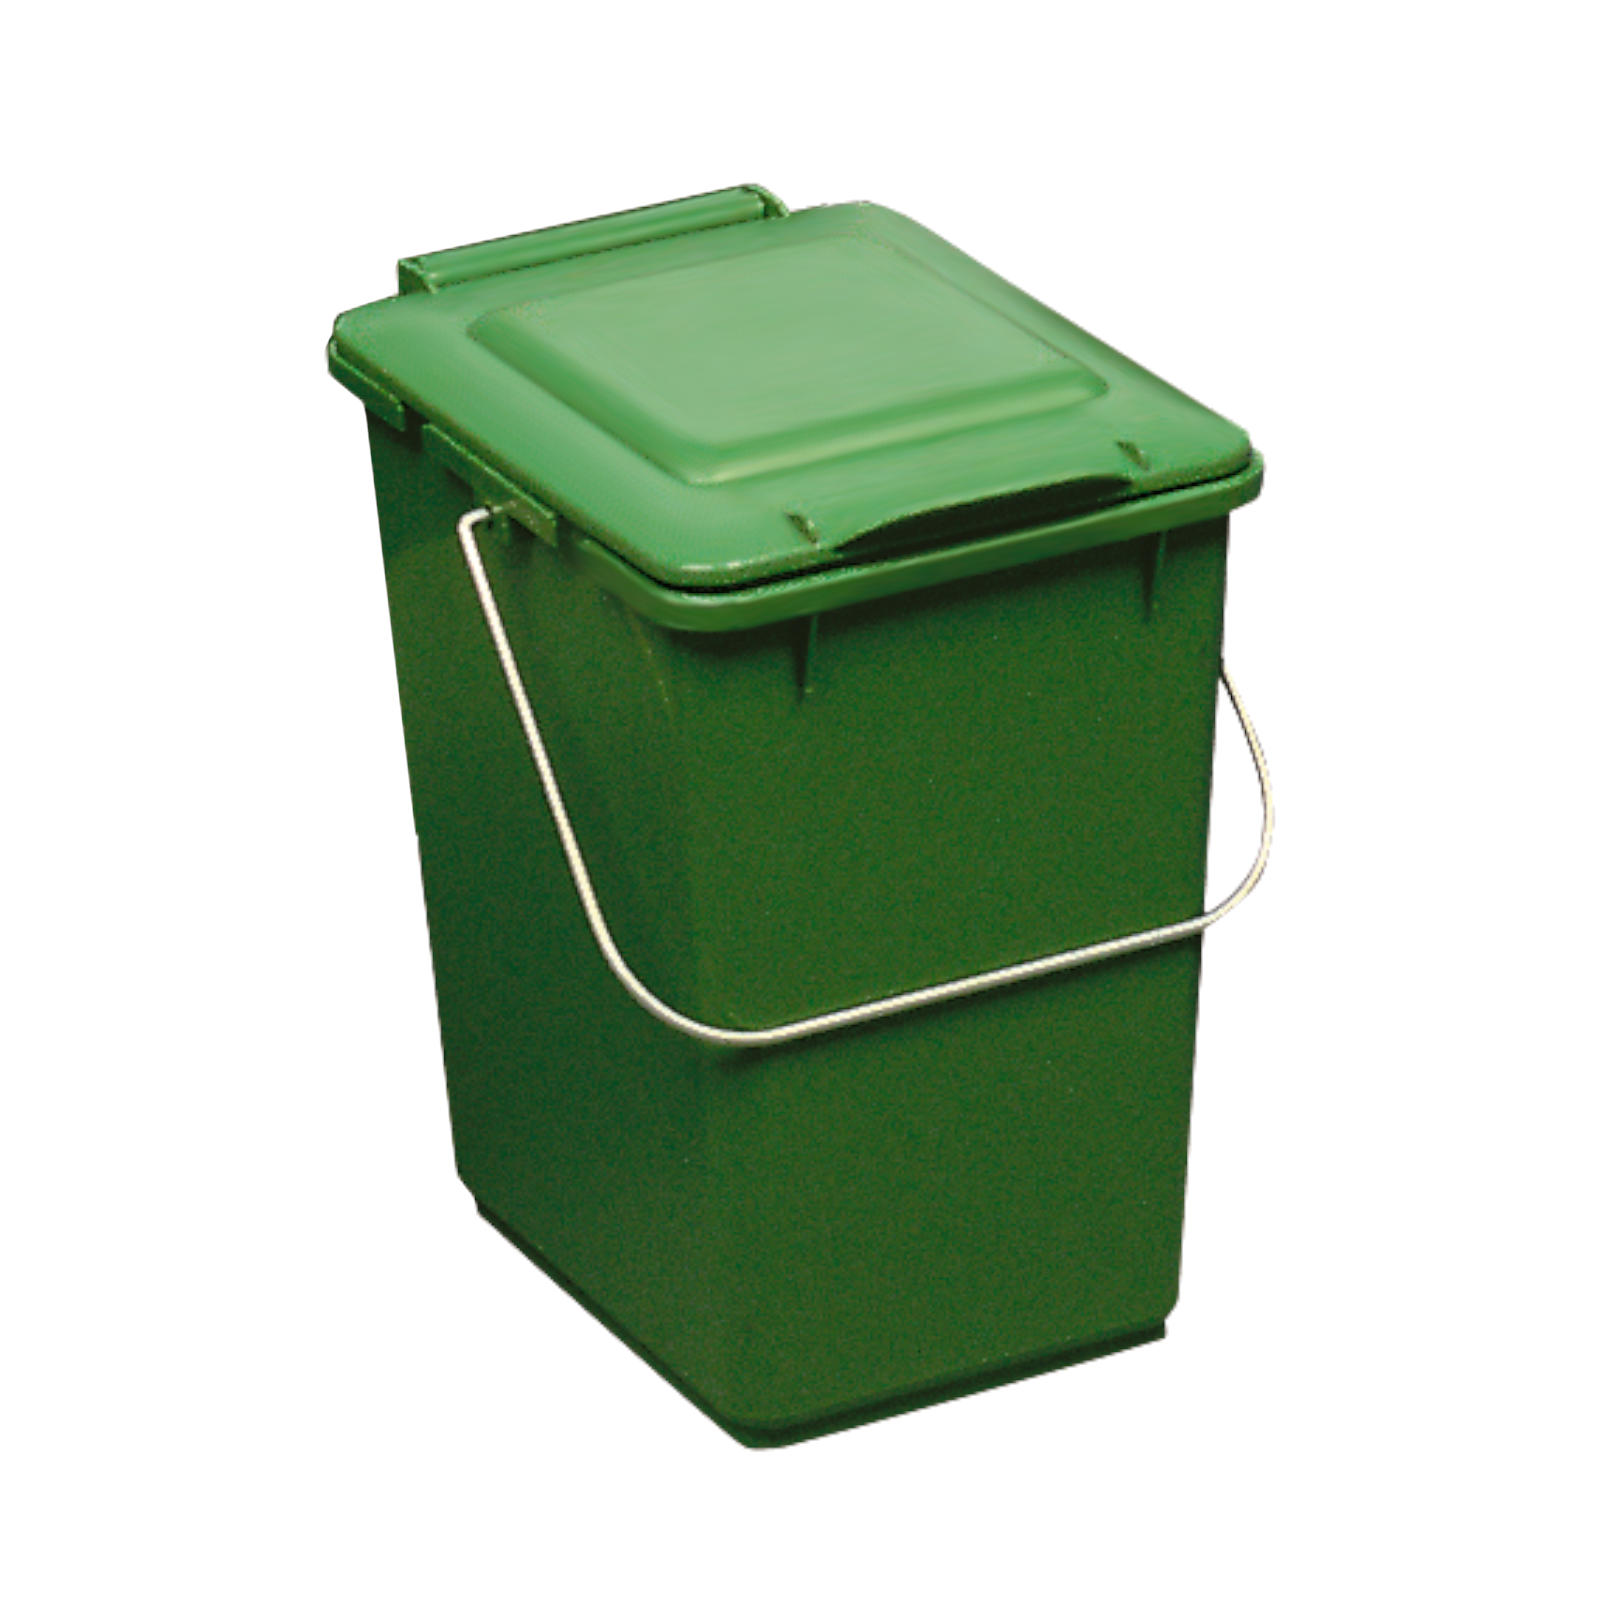 Kosz pojemnik do segregacji sortowania śmieci i odpadków - zielony 10L - sklep.odpady.org